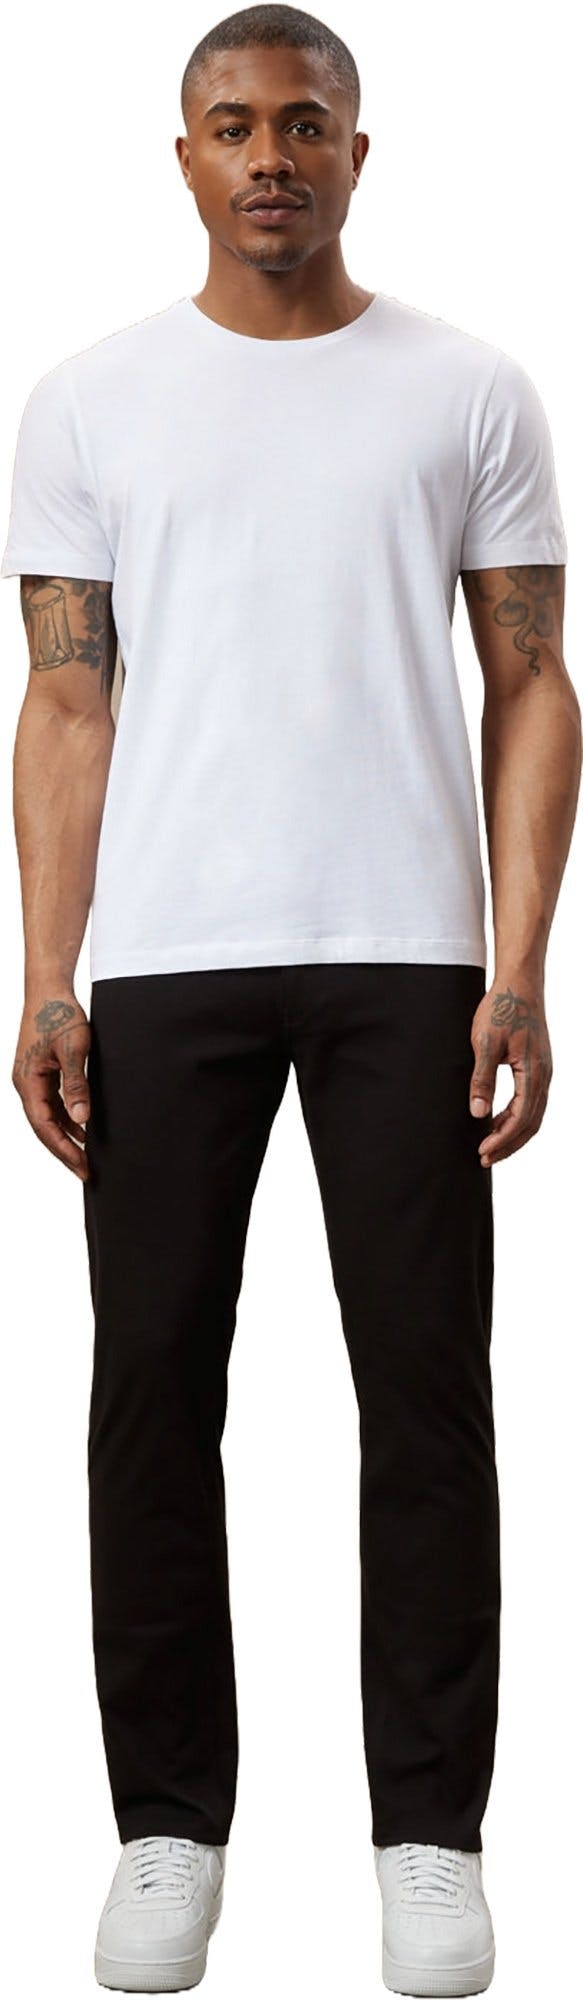 Numéro de l'image de la galerie de produits 2 pour le produit Pantalon coupe ajustée Flex - Homme